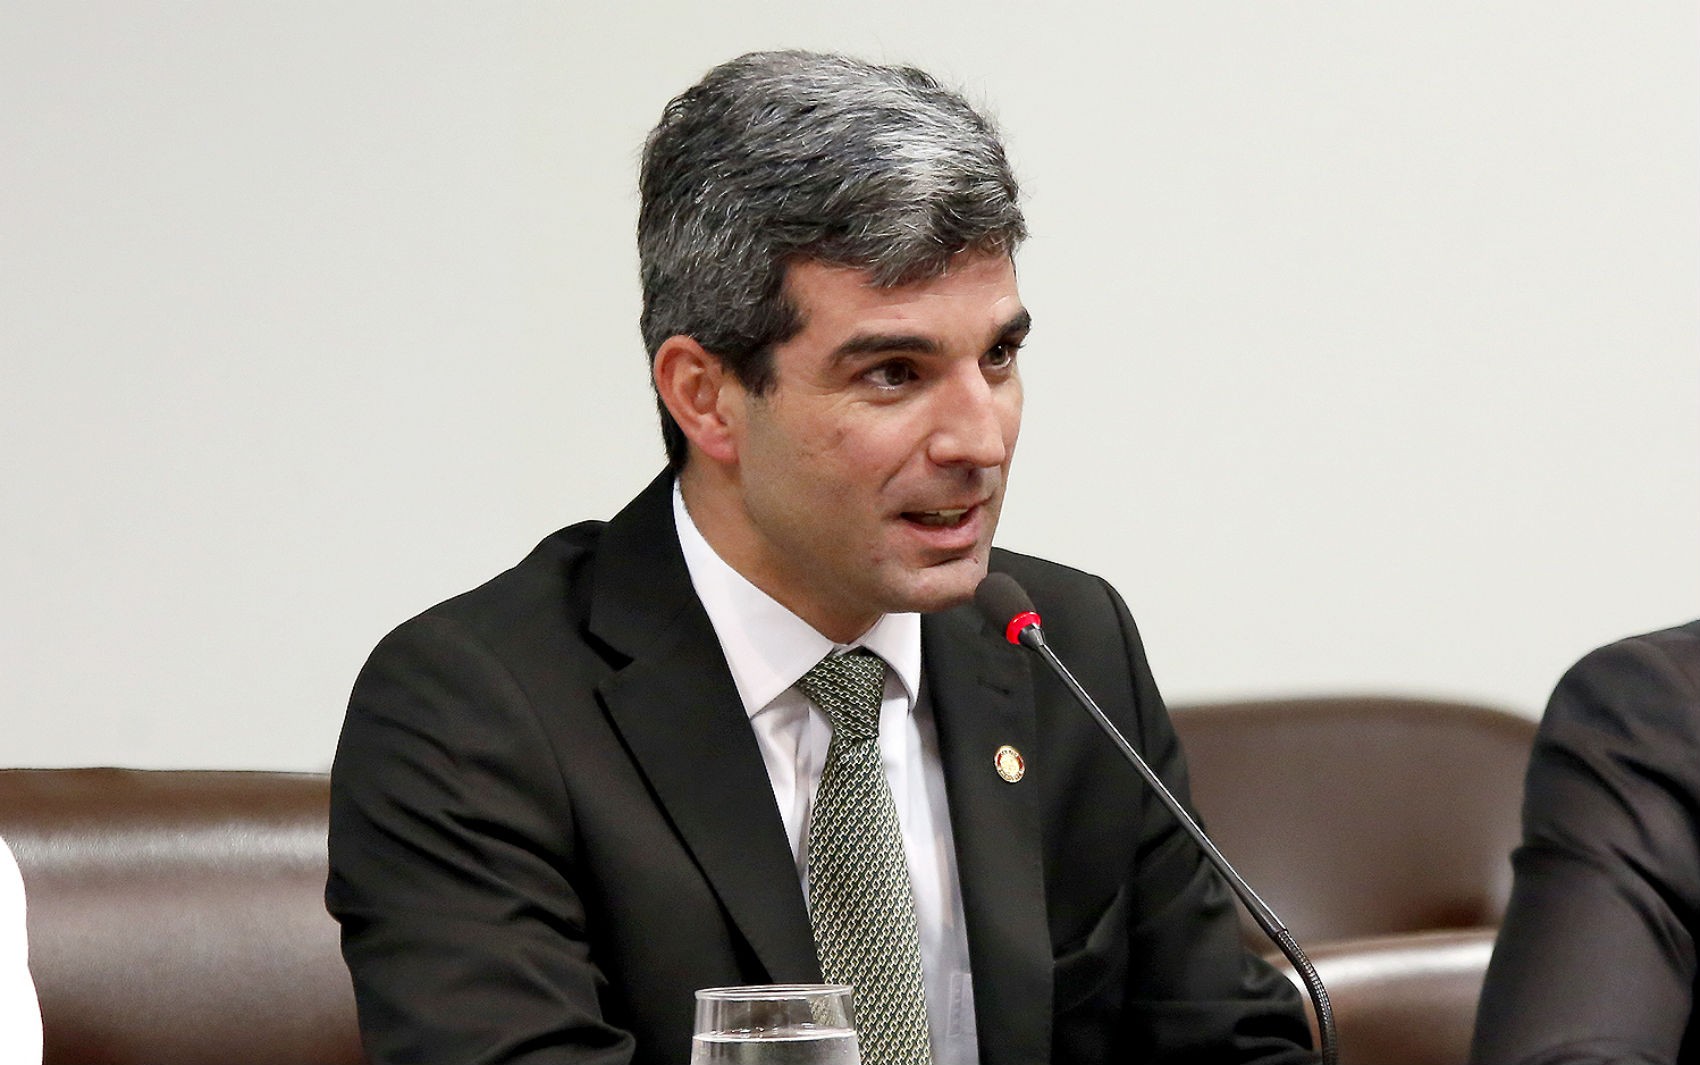 Morre o ex-presidente da OAB em Brasília, Juliano Costa Couto